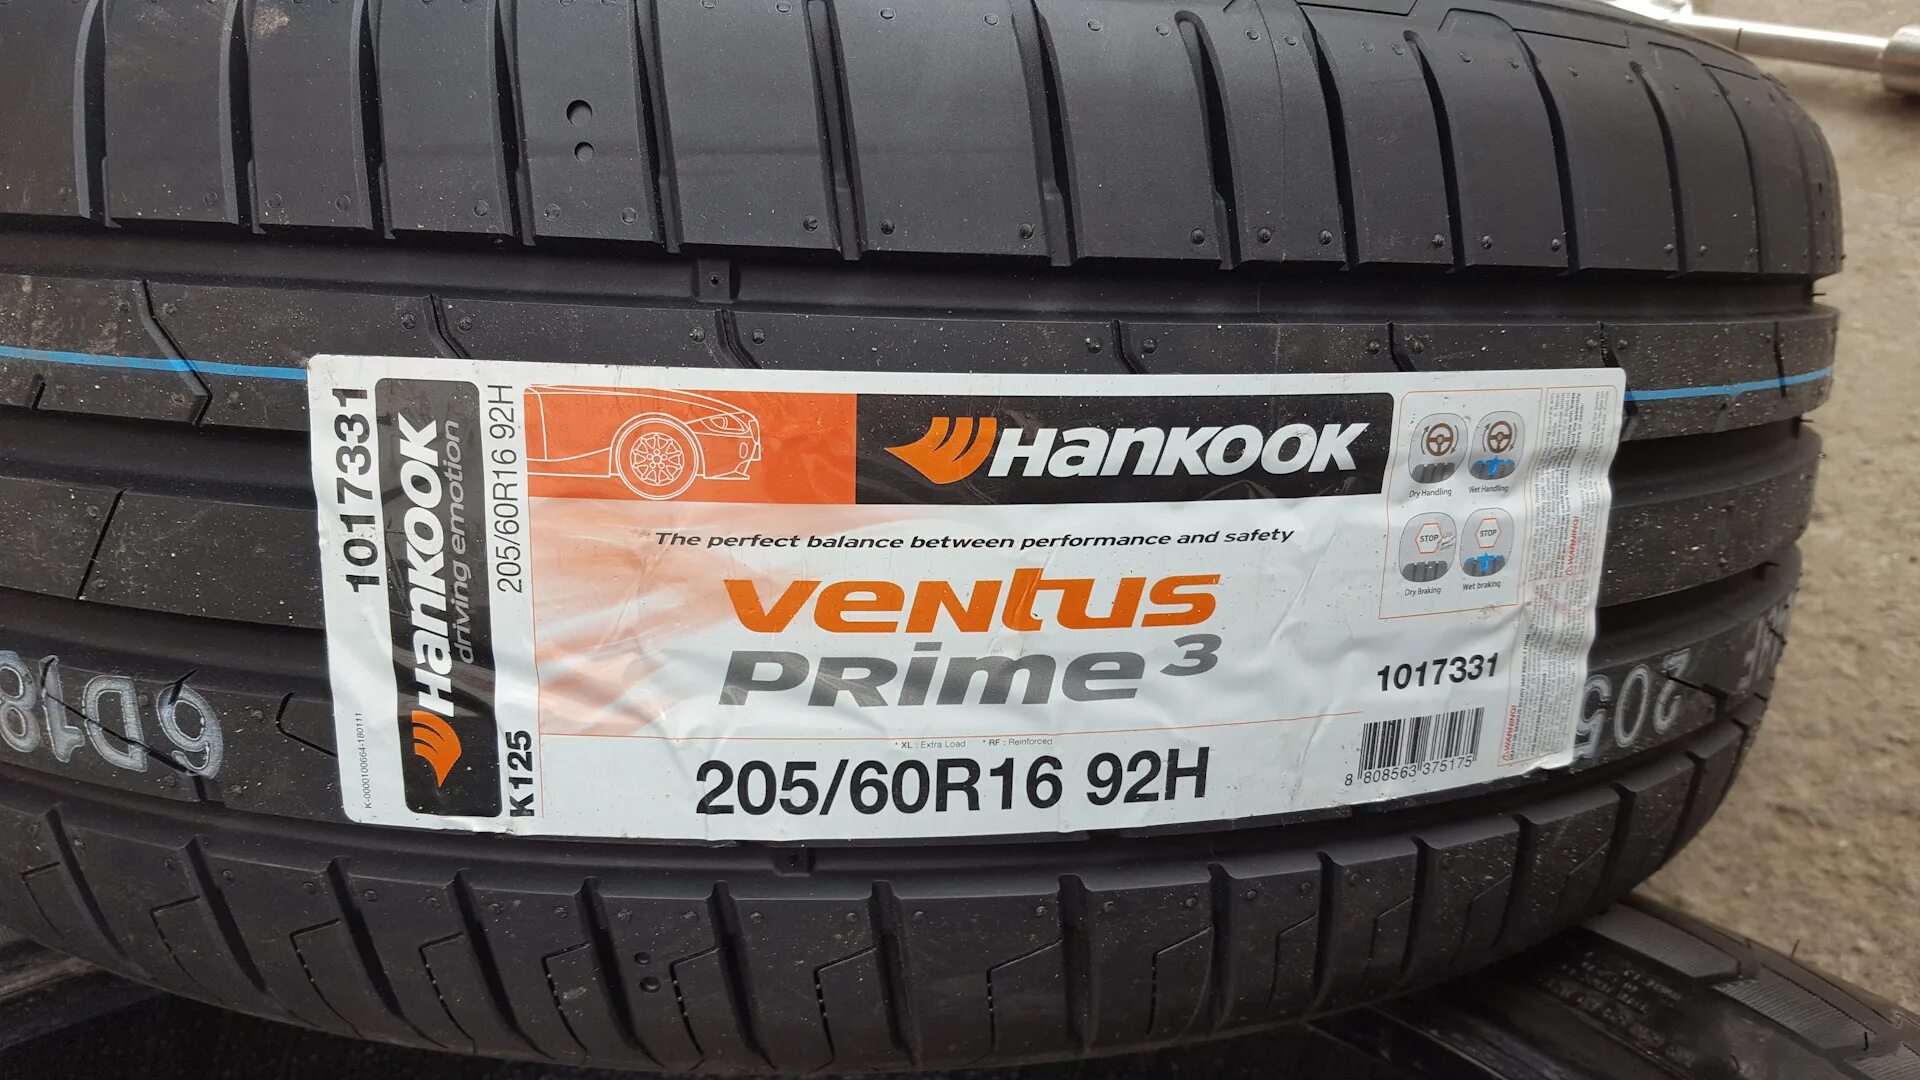 Hankook Ventus Prime 3. Hankook Ventus Prime 4. 205/60r16 Hankook Ventus prime4 k135 92h. Hankook Ventus Prime 4 k135.